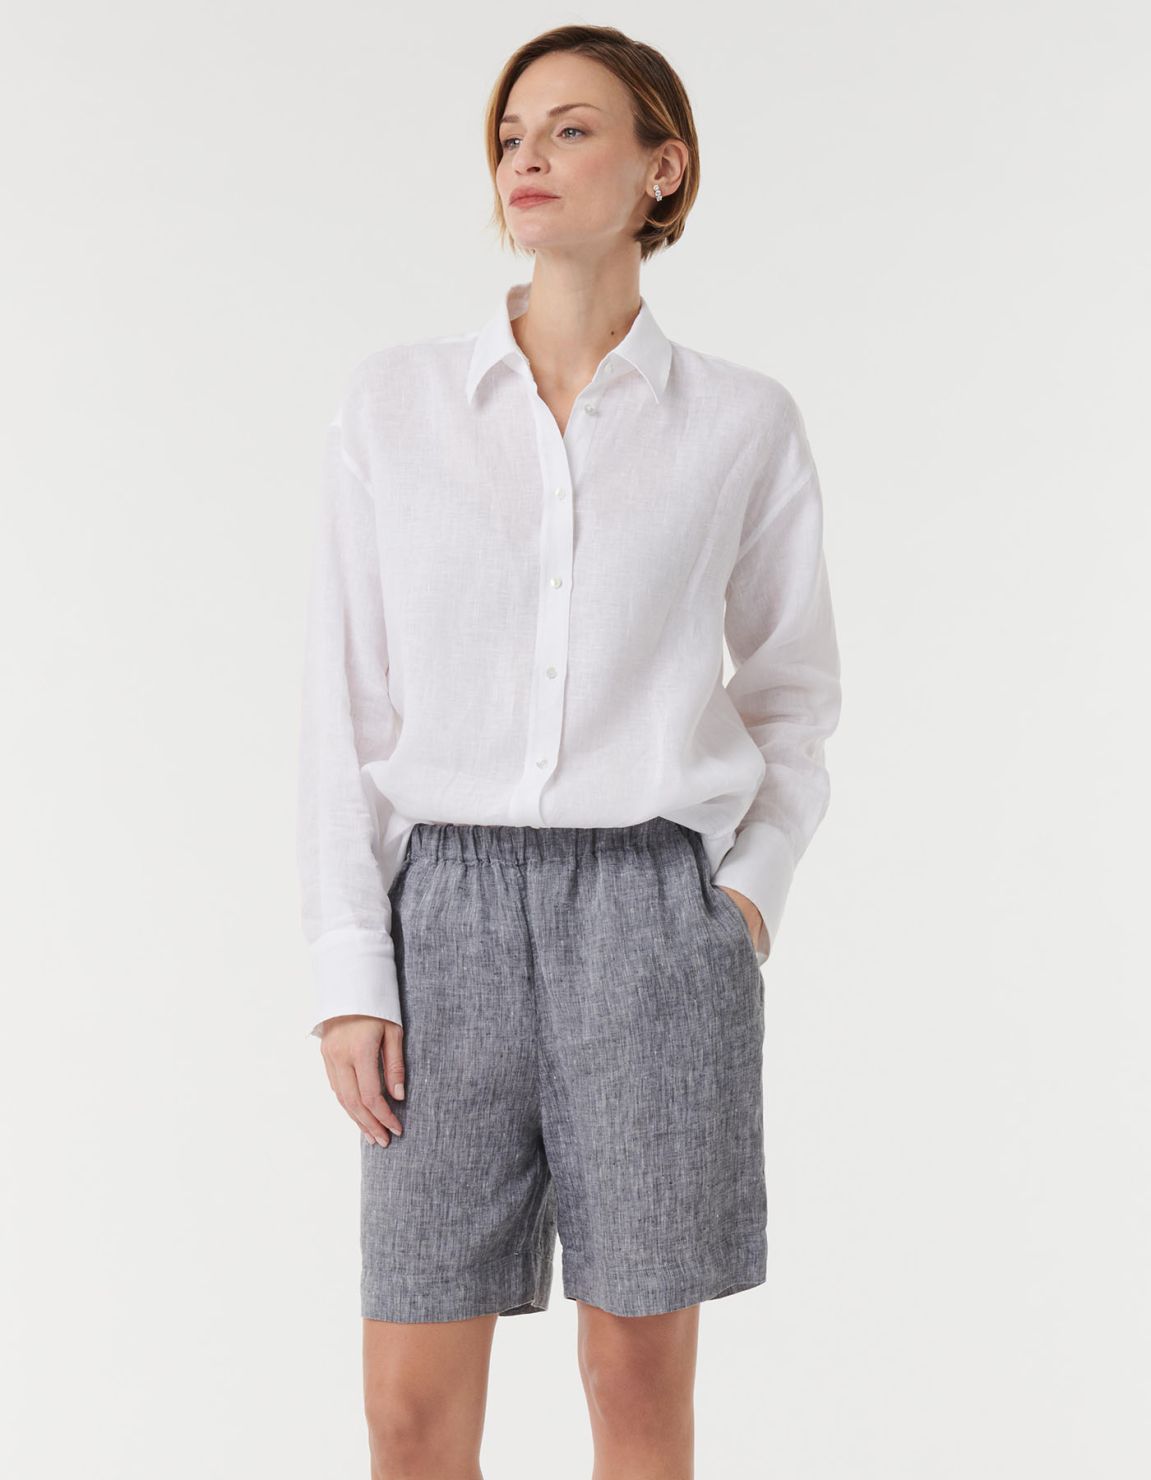 Pants Grey Melange Linen Solid colour One Size 3